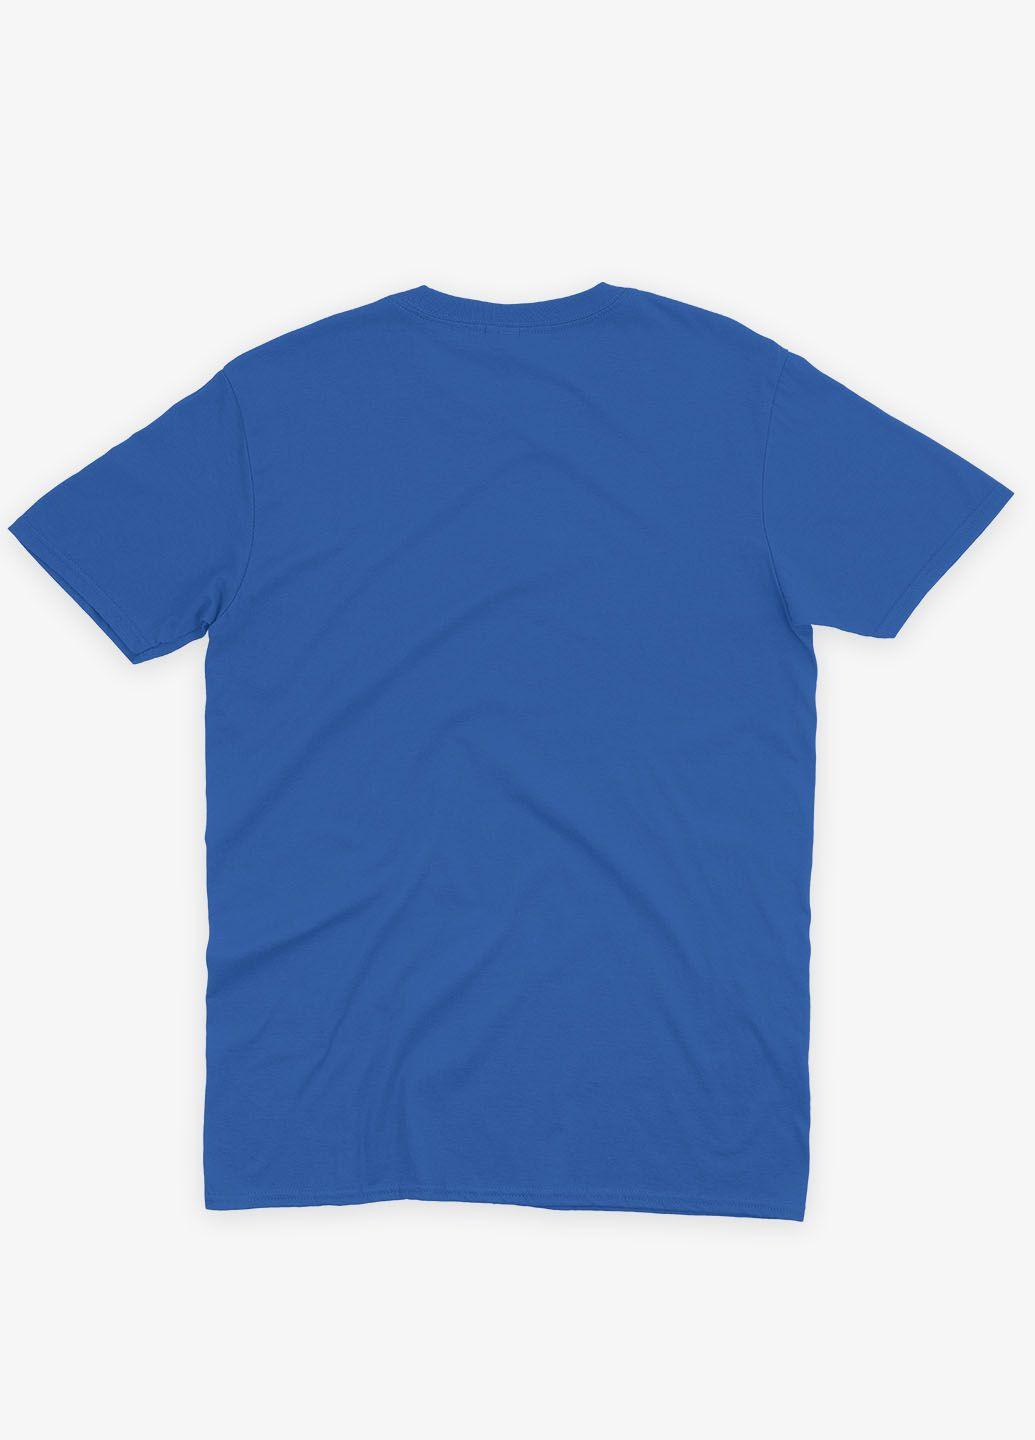 Синяя демисезонная футболка для мальчика с принтом супервора - веном (ts001-1-brr-006-013-032-b) Modno